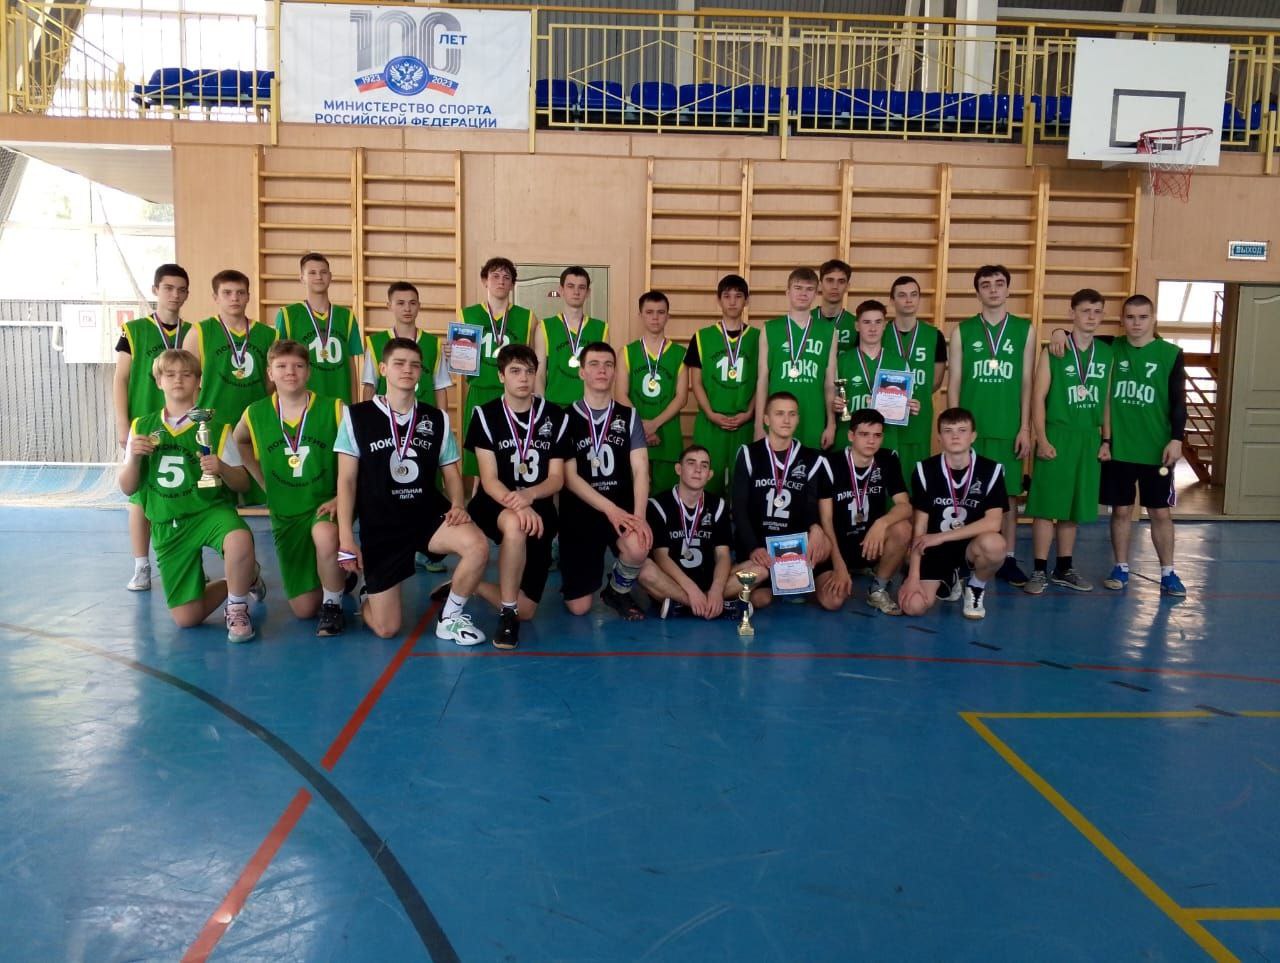 Сегодня в Светлограде состоялся турнир по баскетболу.